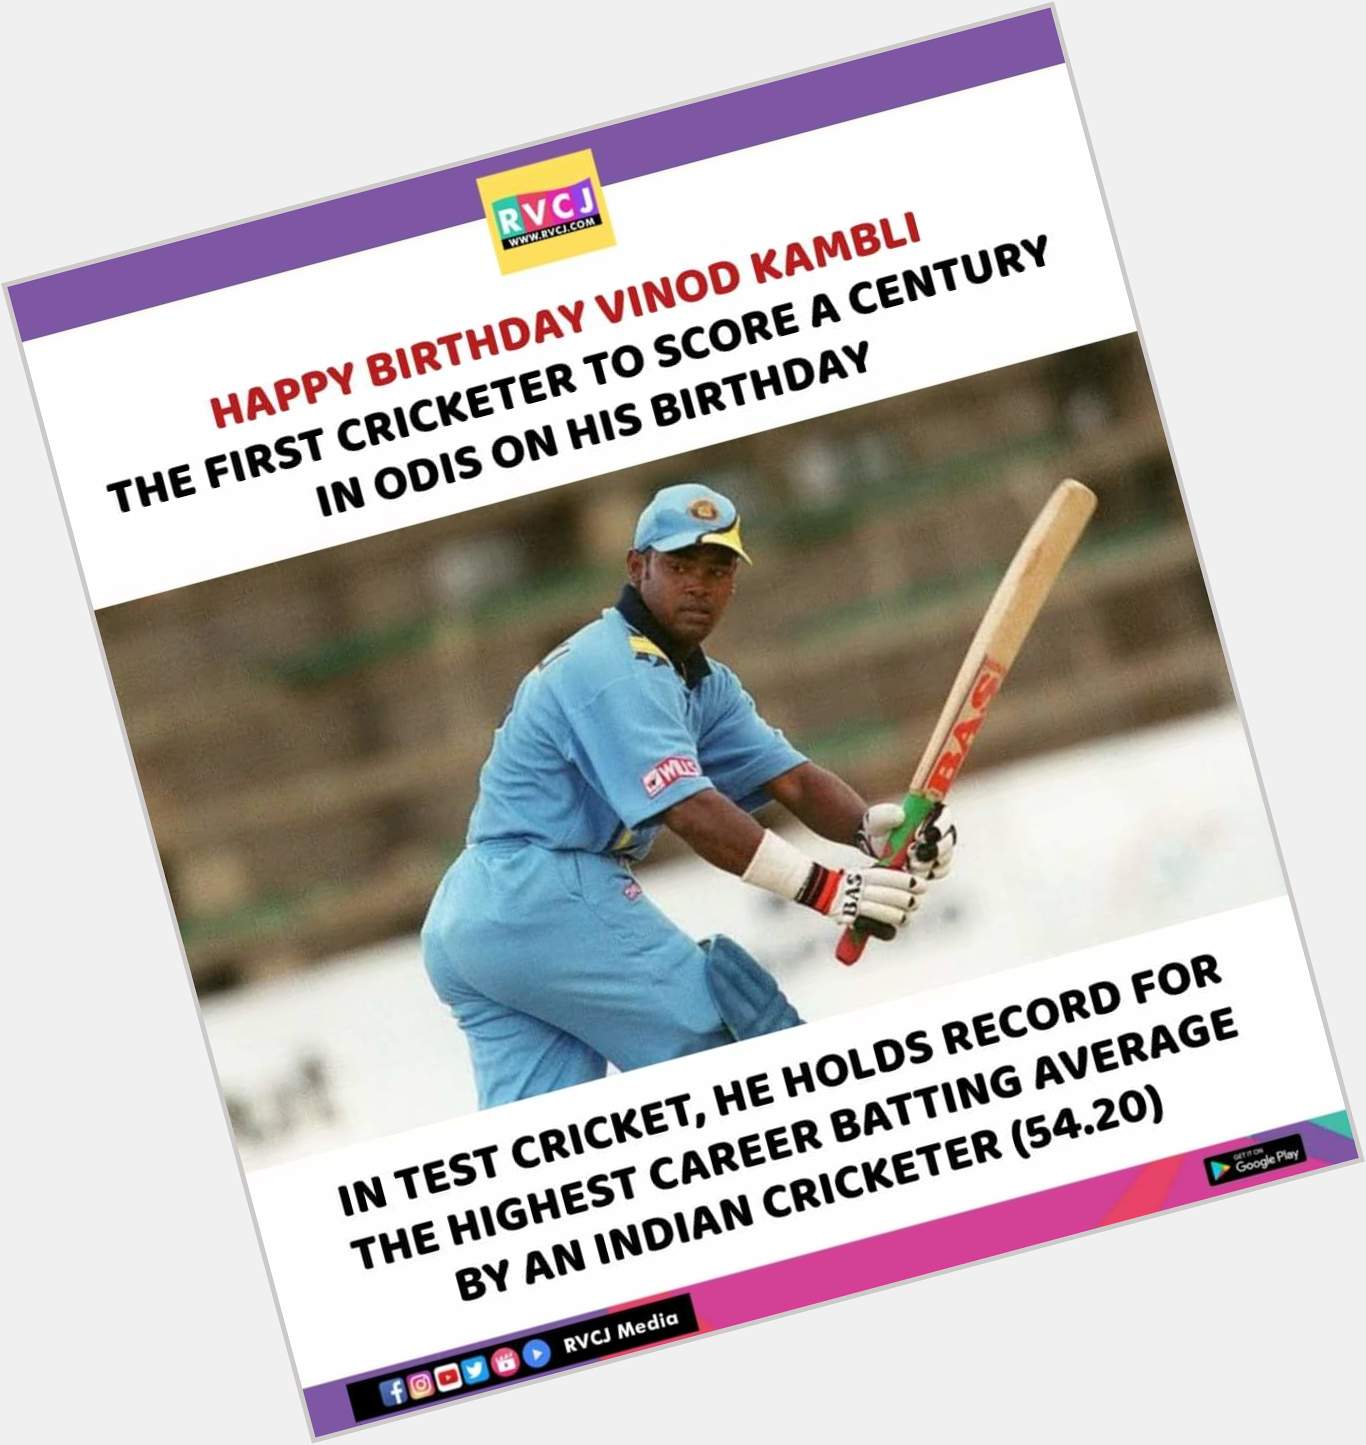 Happy Birthday Vinod Kambli!  